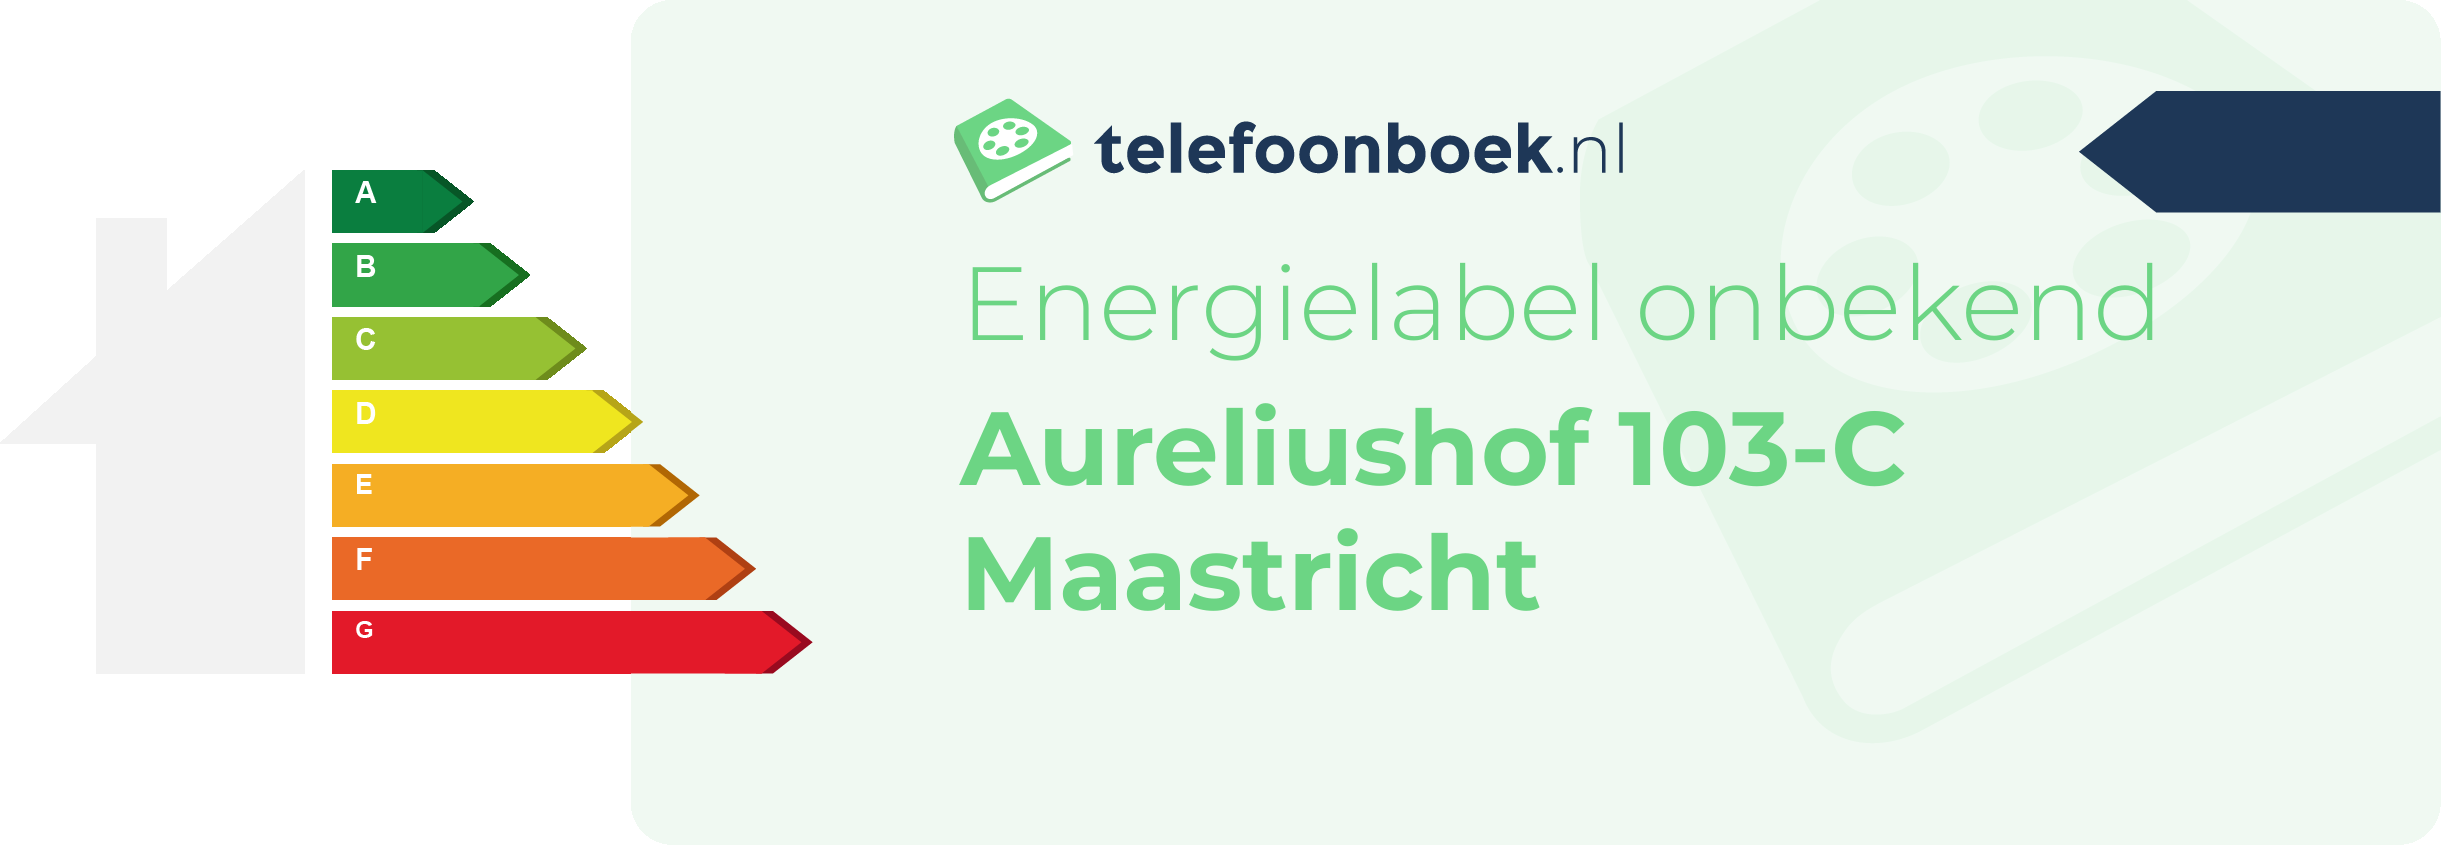 Energielabel Aureliushof 103-C Maastricht